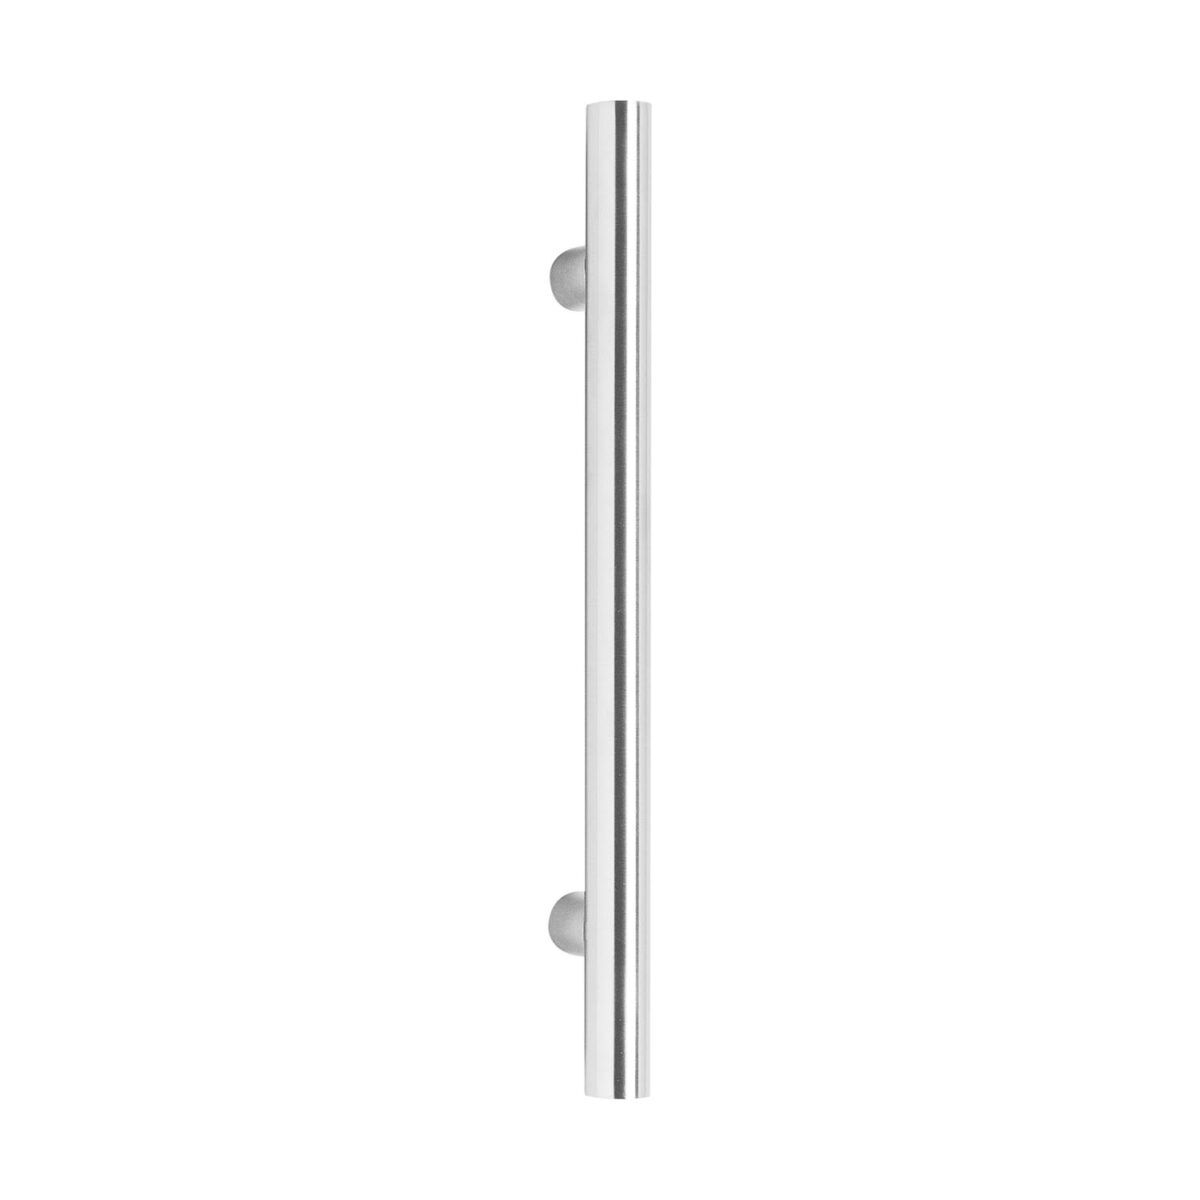 Intersteel Door handles 500 mm T shape brushed stainless steel 70 mm